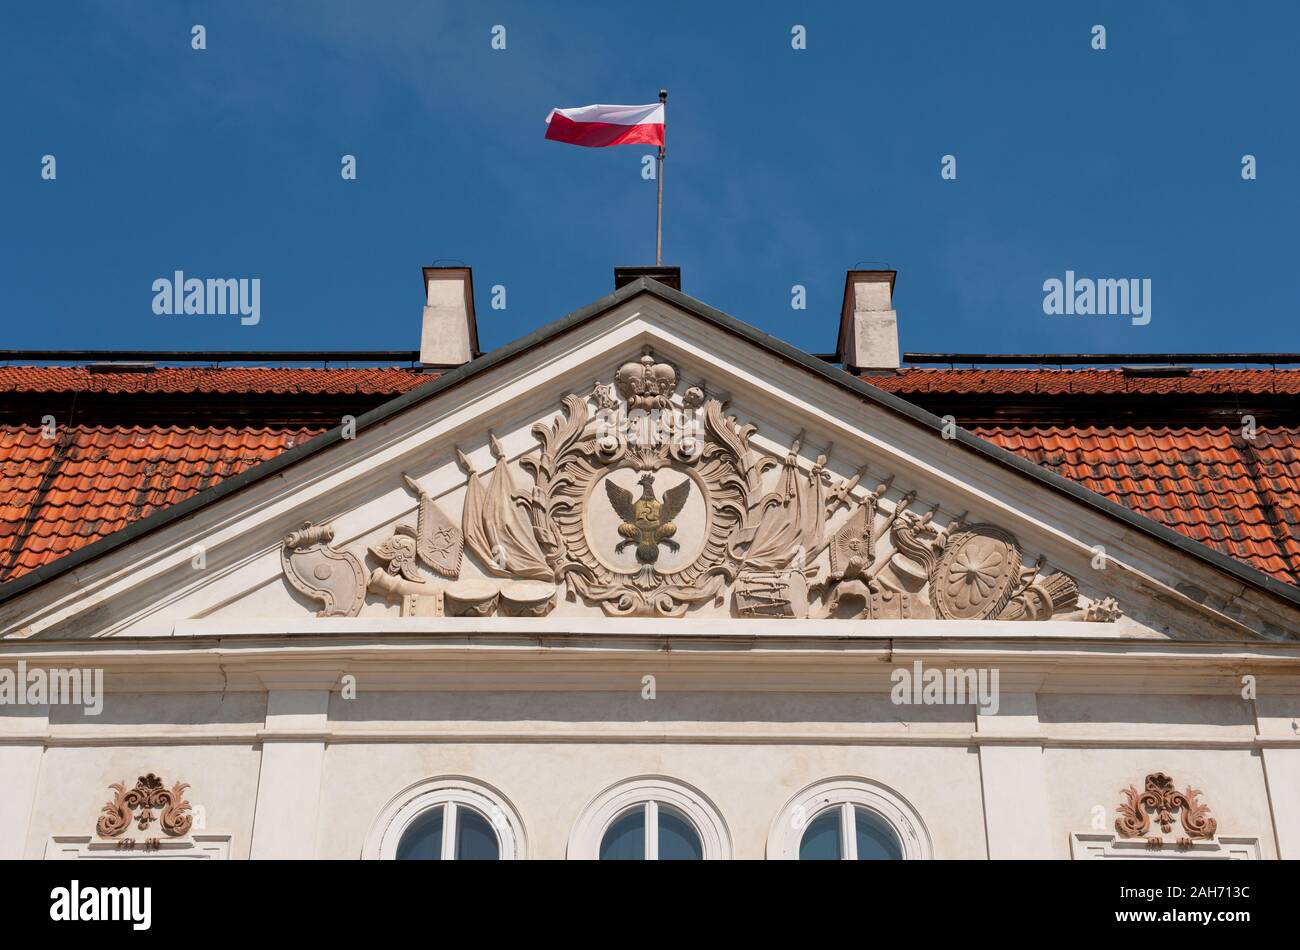 Nieborów Radziwiłł's Palace en detalle en el edificio de enfrente de la entrada, símbolo de águila y la bandera polaca, Vista exterior de Polonia, de Europa, de visita. Foto de stock